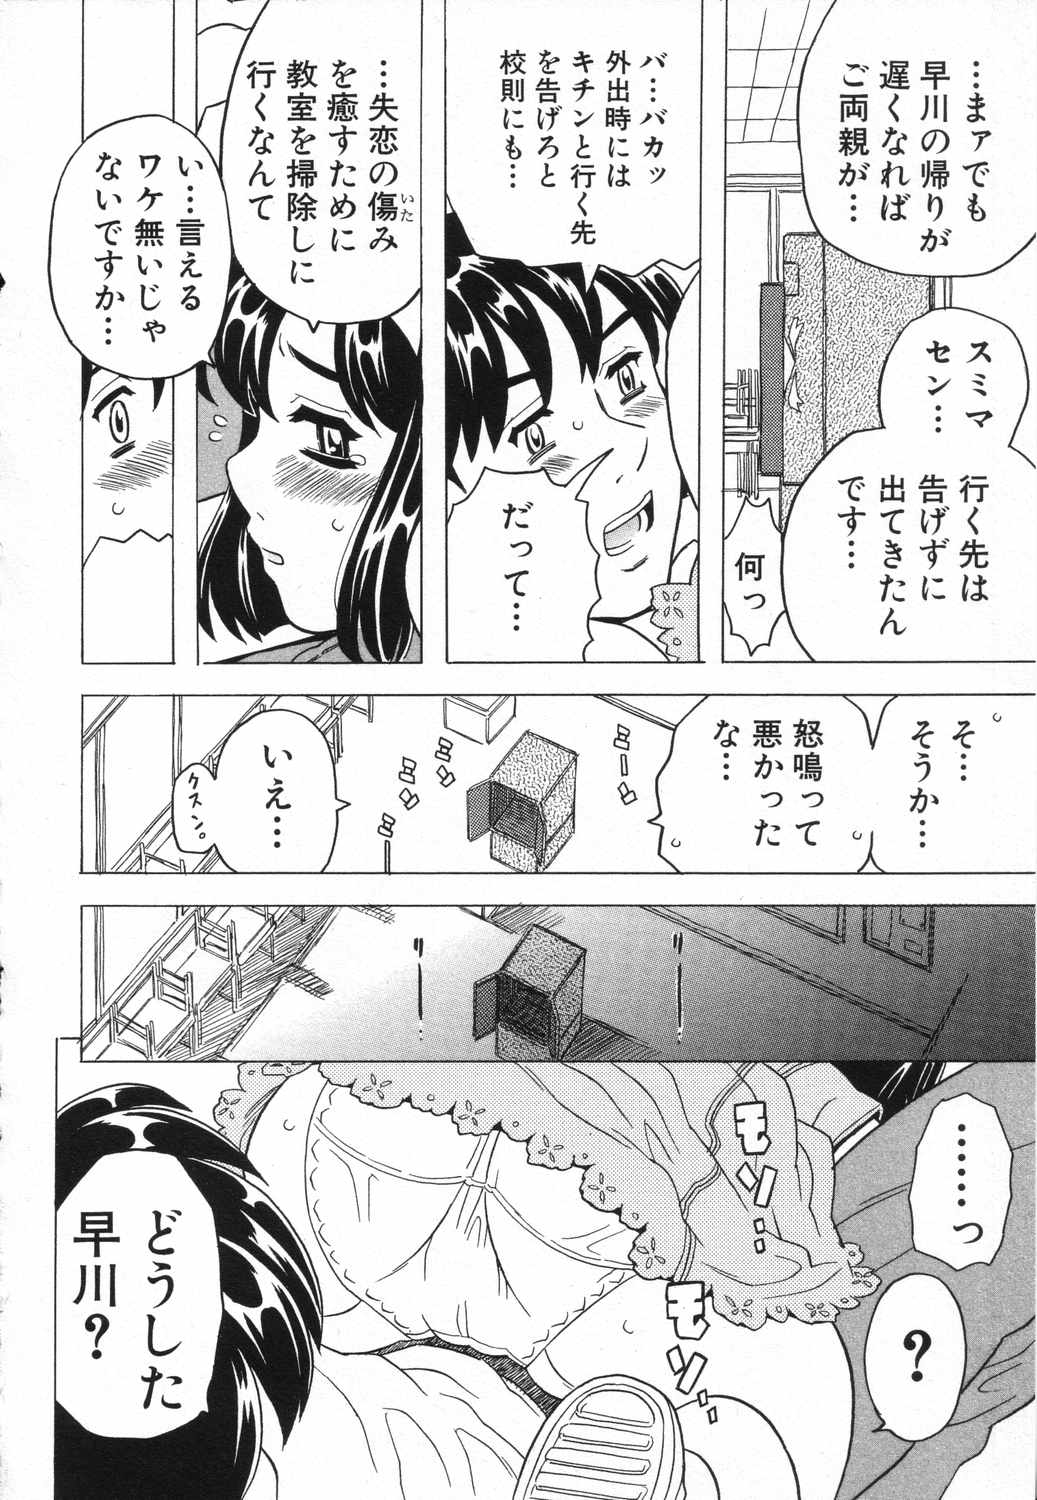 [Anthology] LOCO vol.5 Aki no Omorashi Musume Tokushuu page 13 full